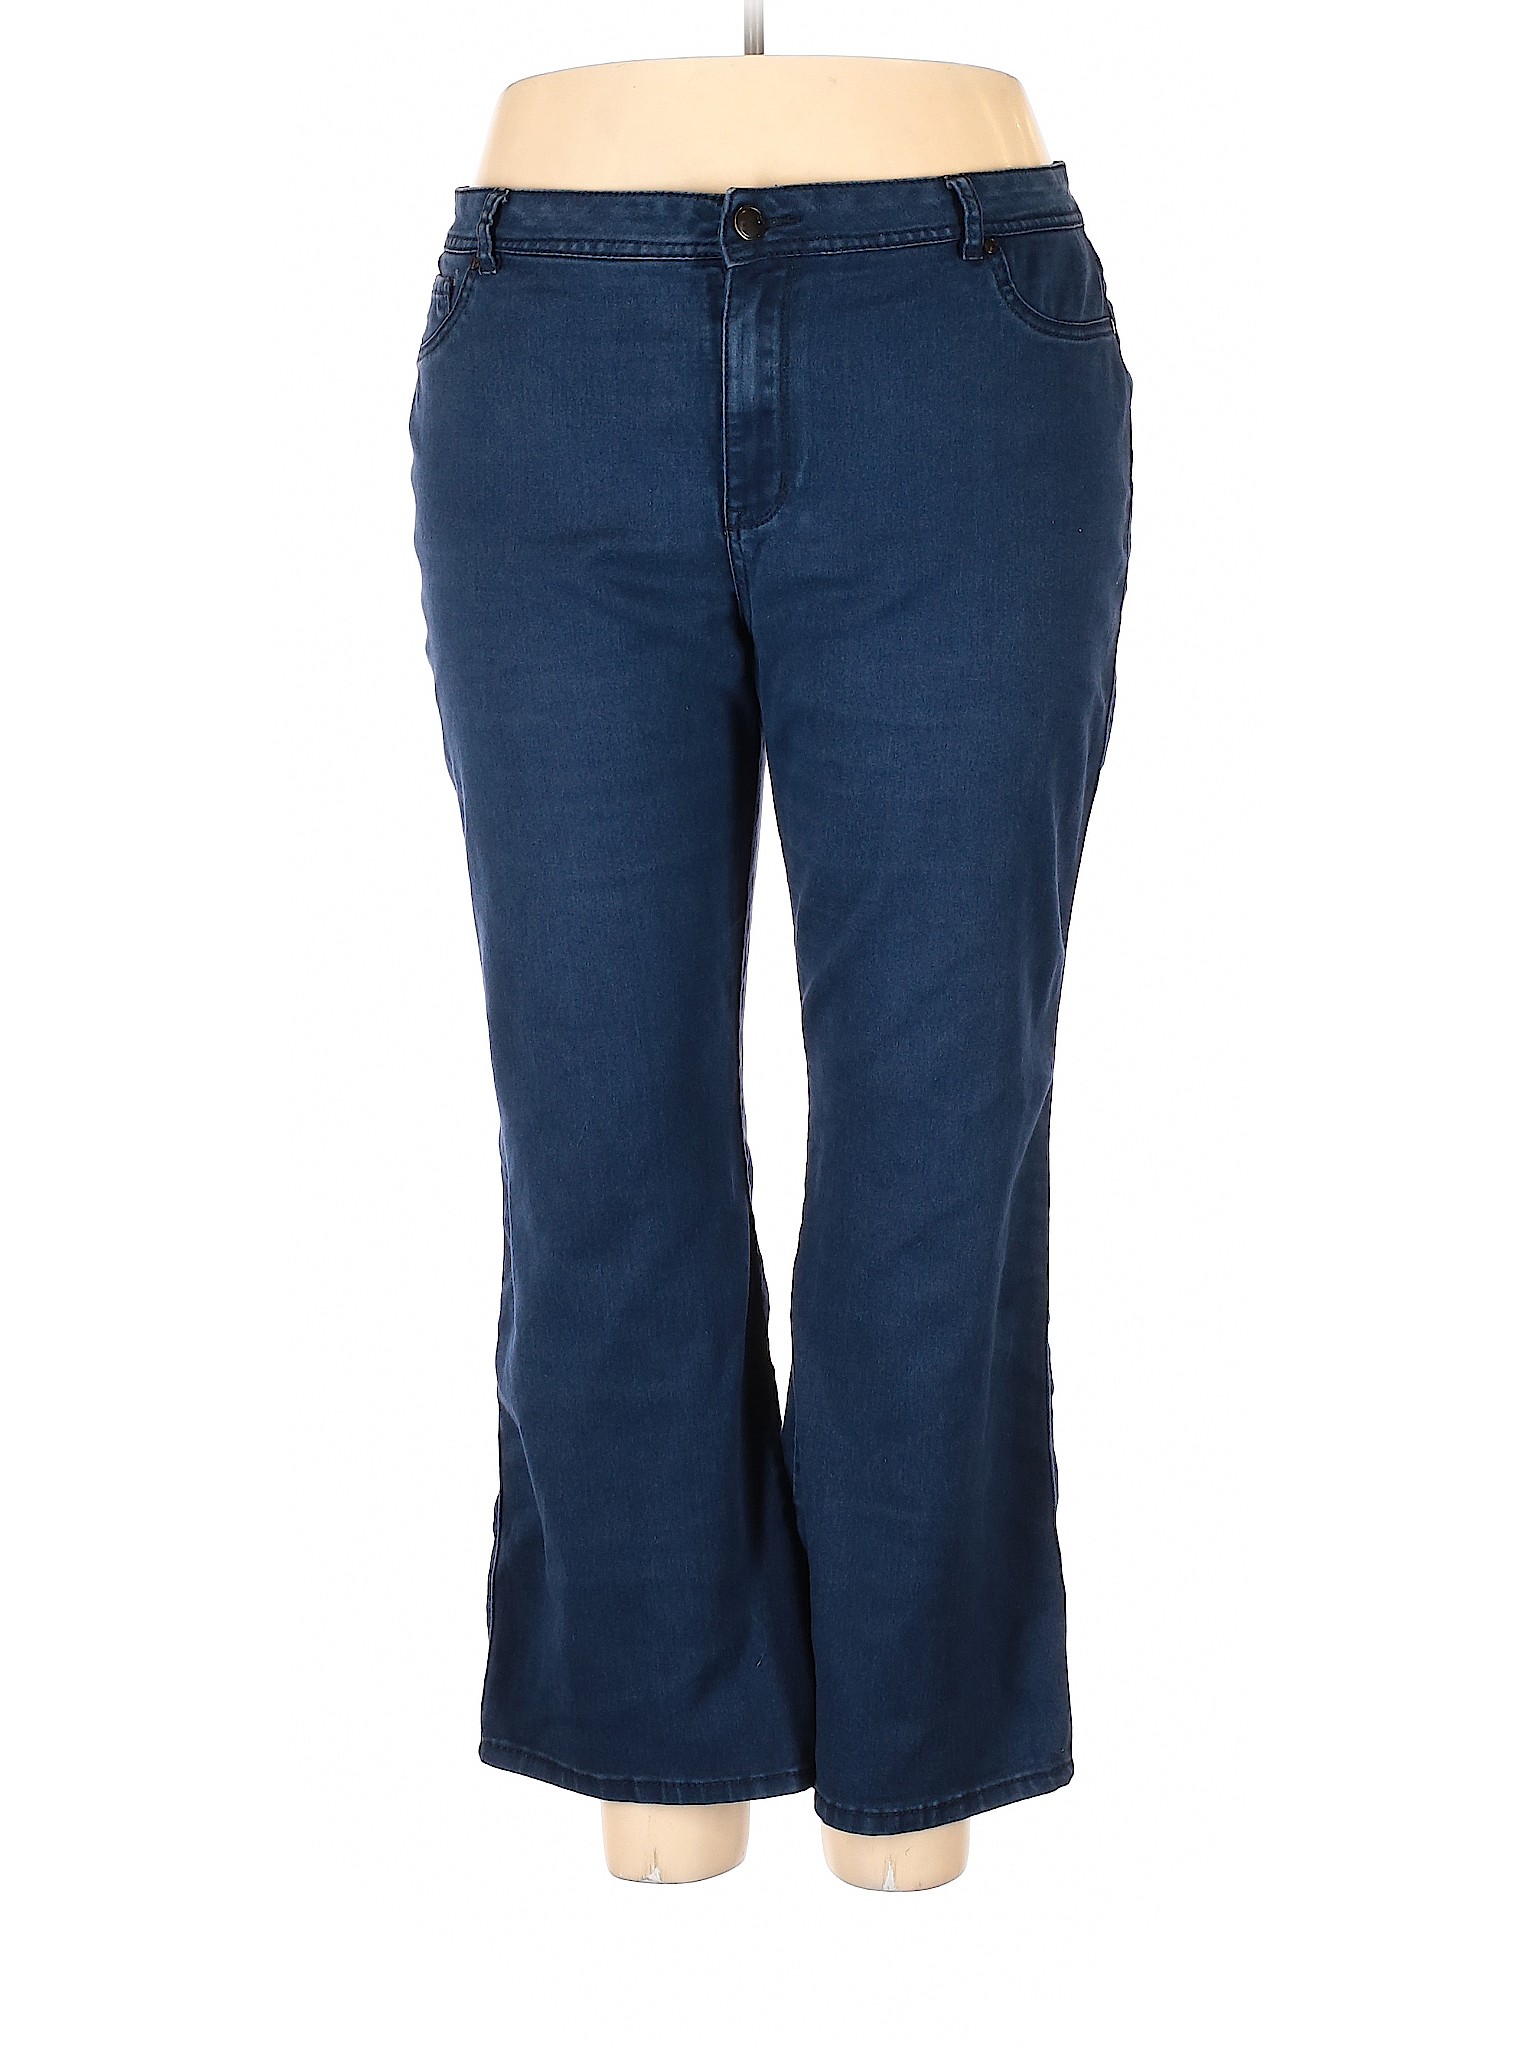 Avenue - Pre-Owned Avenue Women's Size 22 Plus Jeans - Walmart.com ...